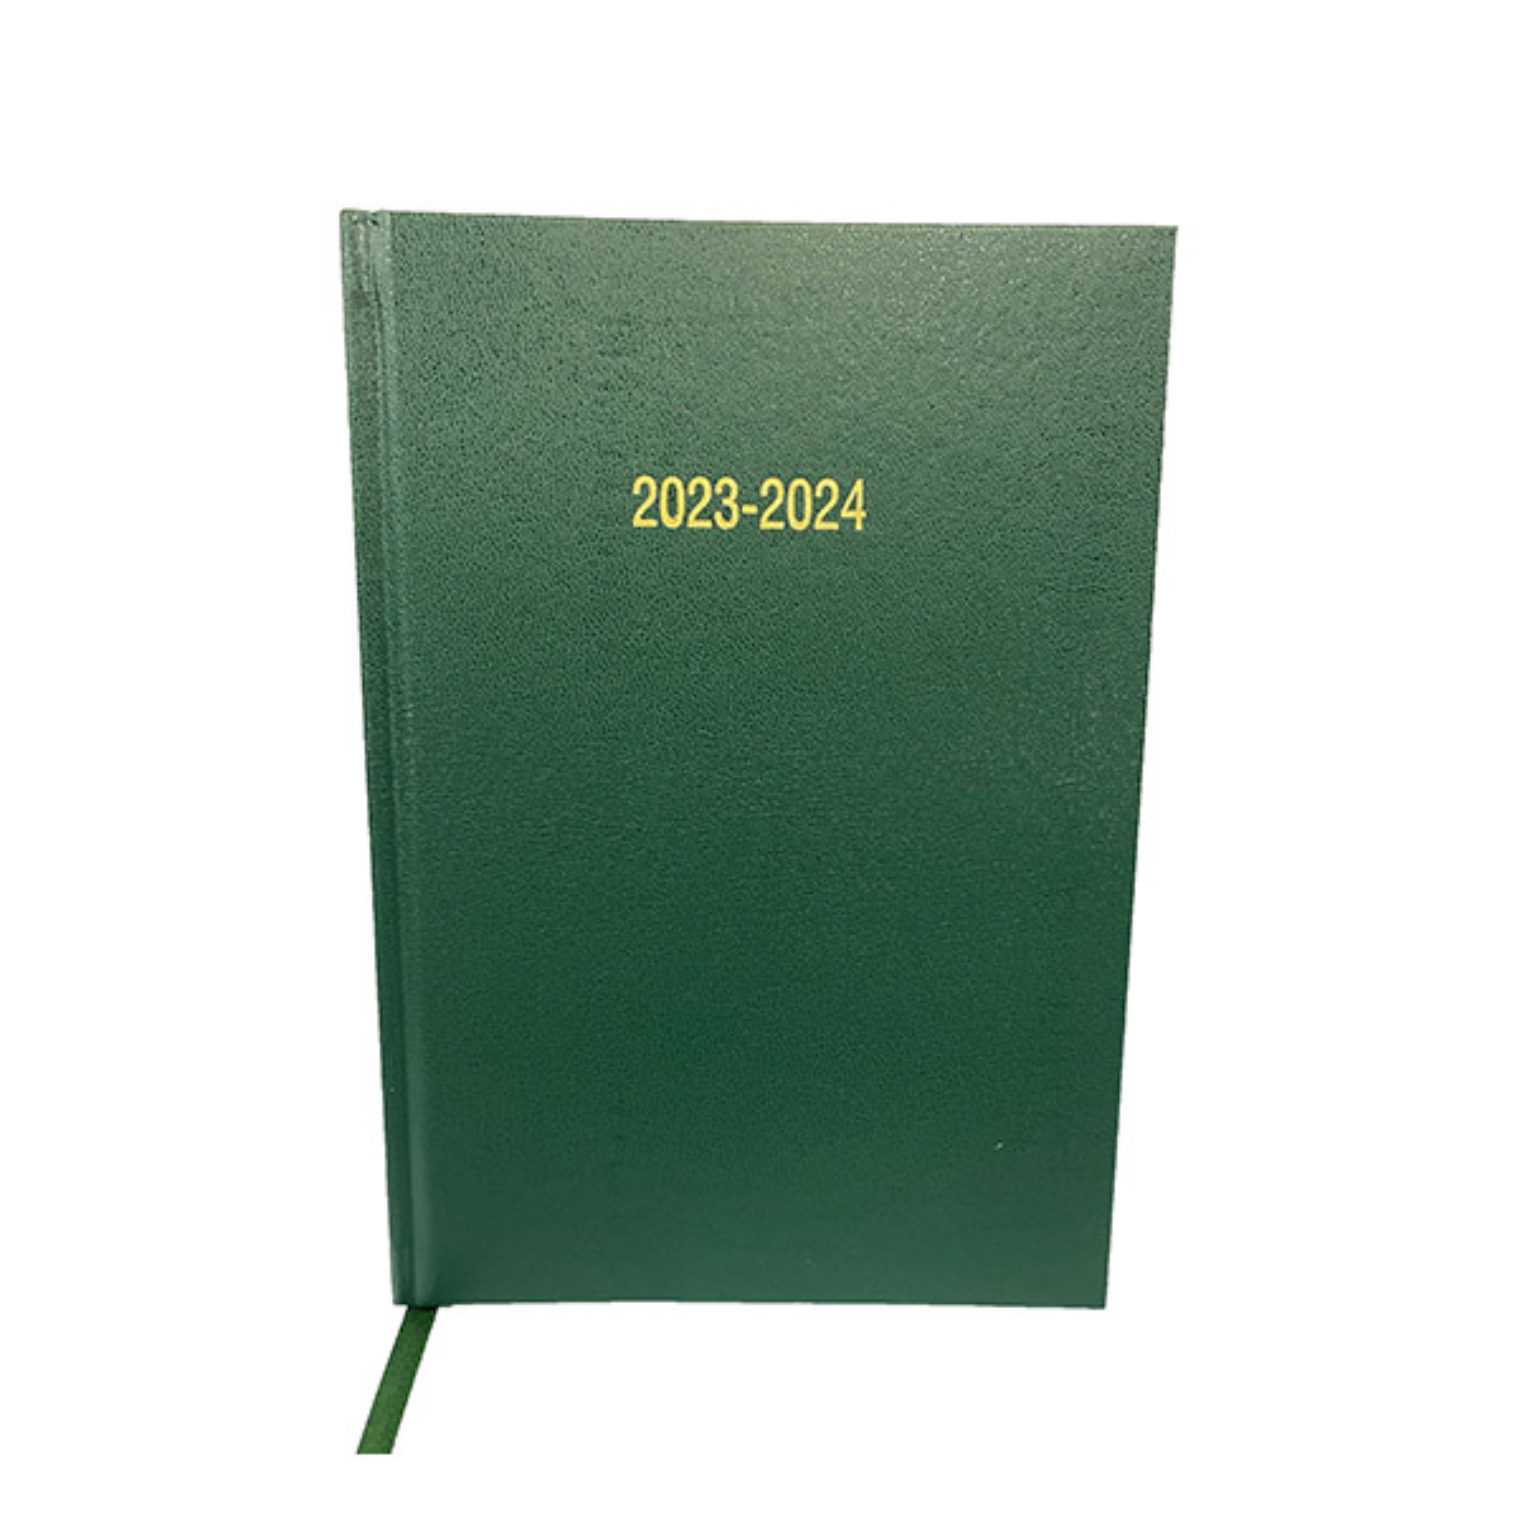 2023/24 Academic Diaries - Dark Green